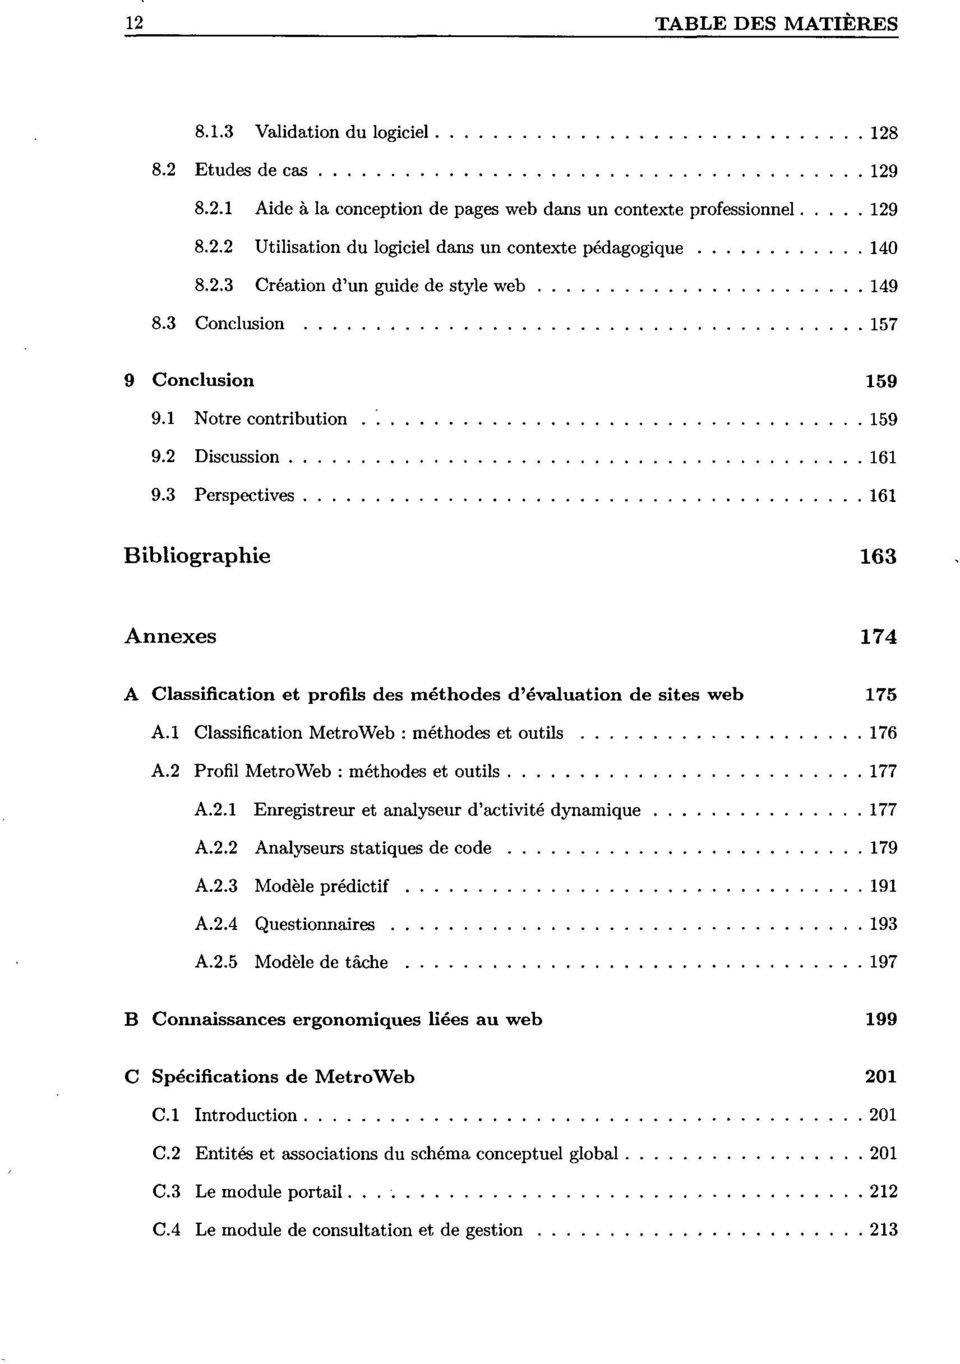 3 Perspectives 161 Bibliographie 163 Annexes 174 A Classification et profils des méthodes d'évaluation de sites web 175 A.l Classification MetroWeb : méthodes et outils 176 A.